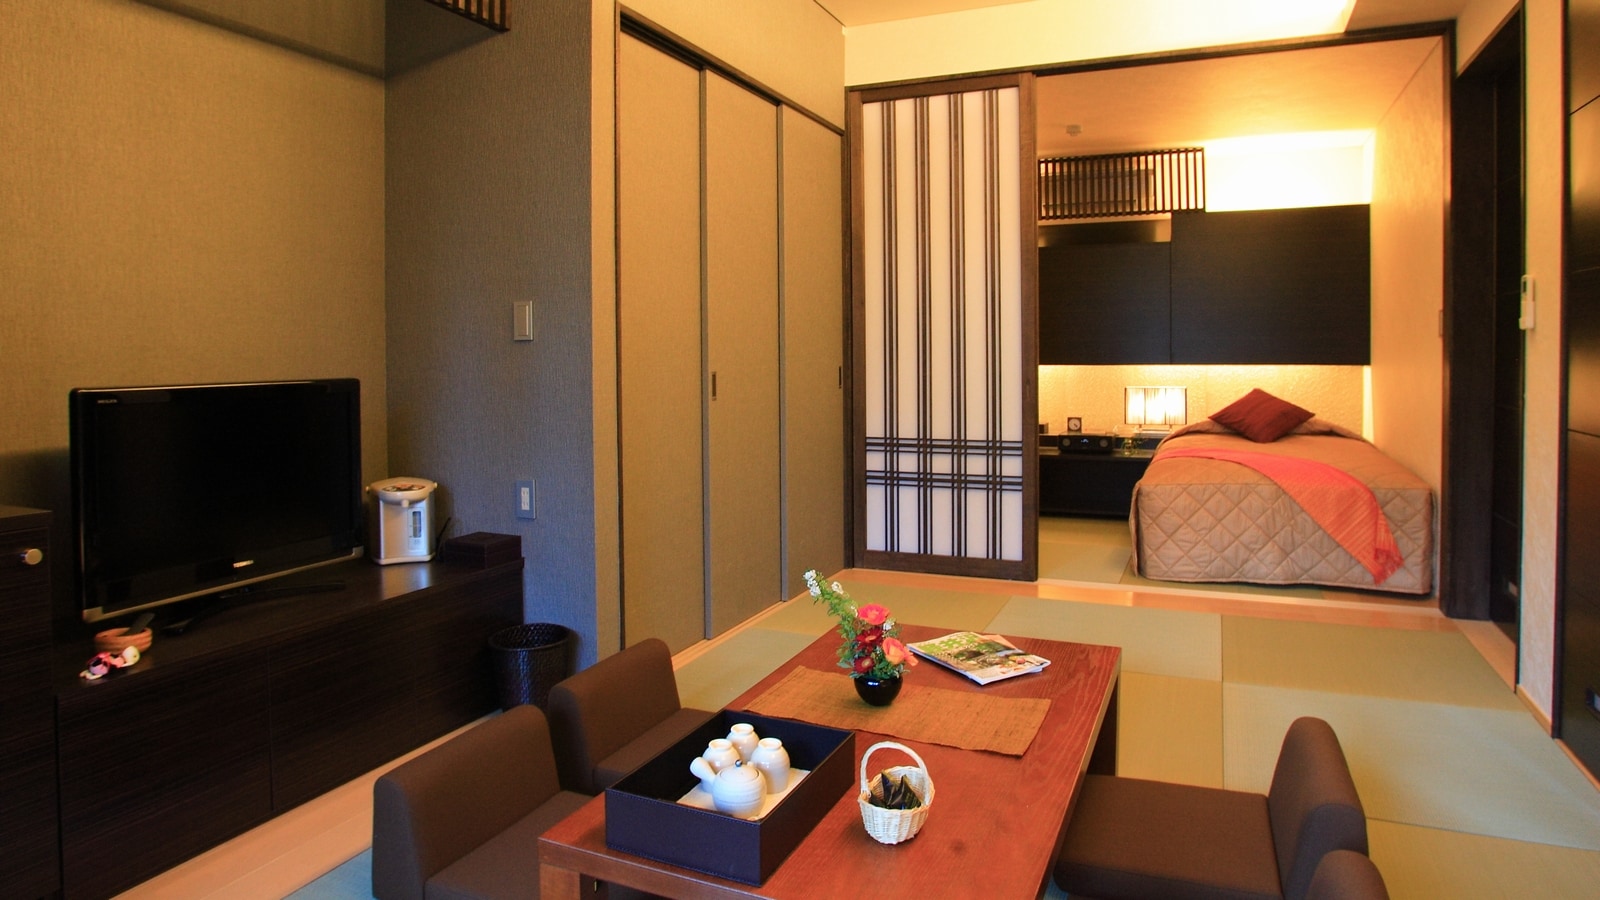 【신관 일본식 방예】 침대가 트윈 타입의 방입니다♪(방 지정은 할 수 없기 때문에, 양해 바랍니다)